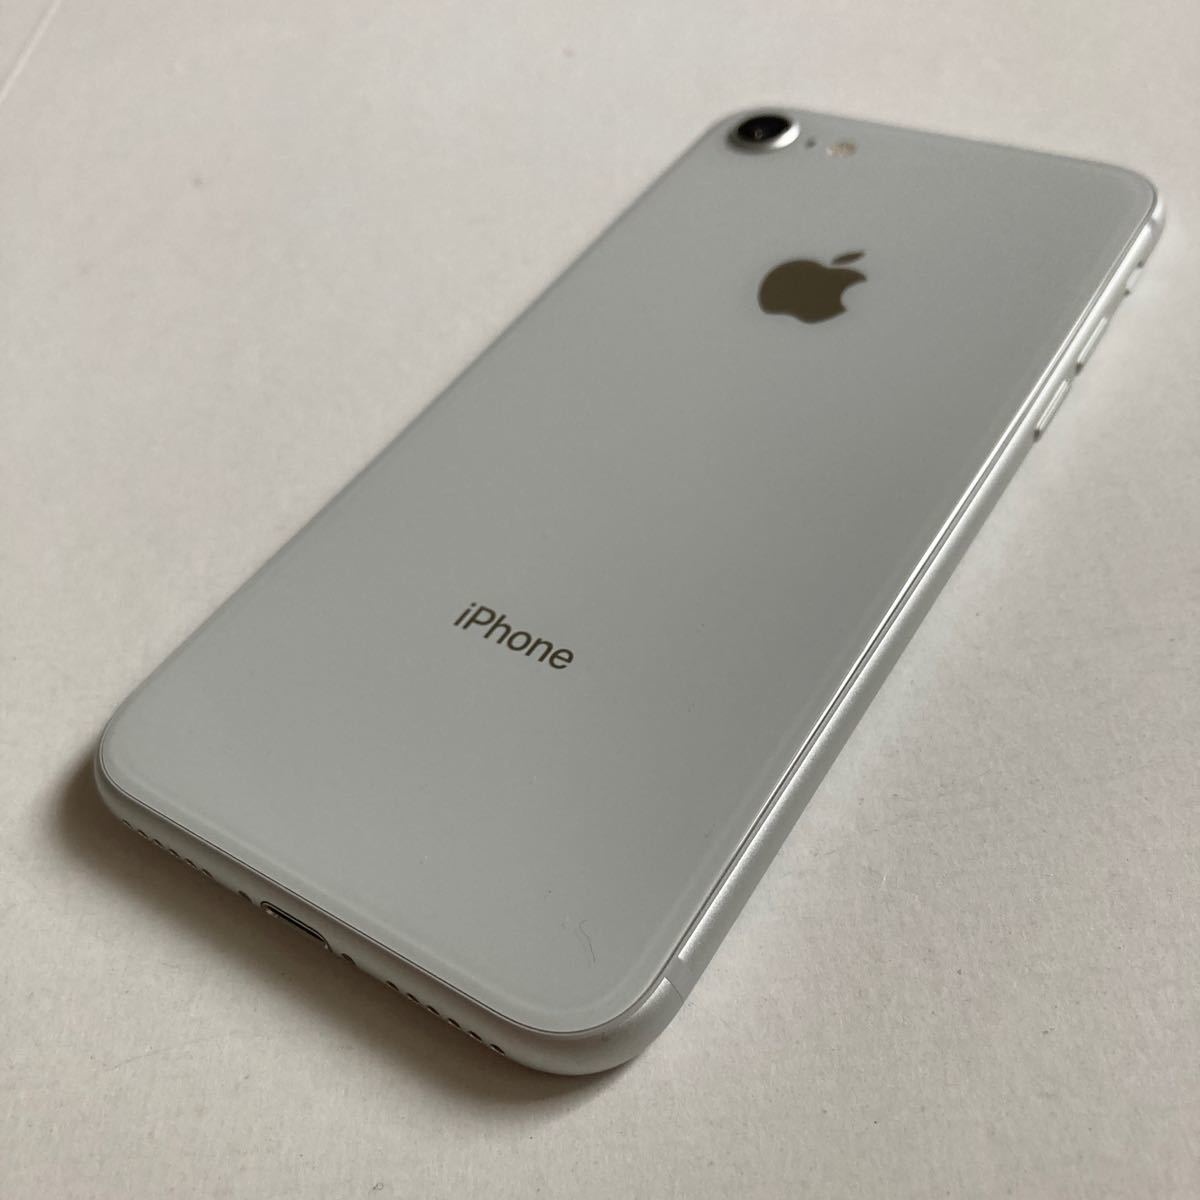 01521k iPhone8 64GB silver SIMフリー 品